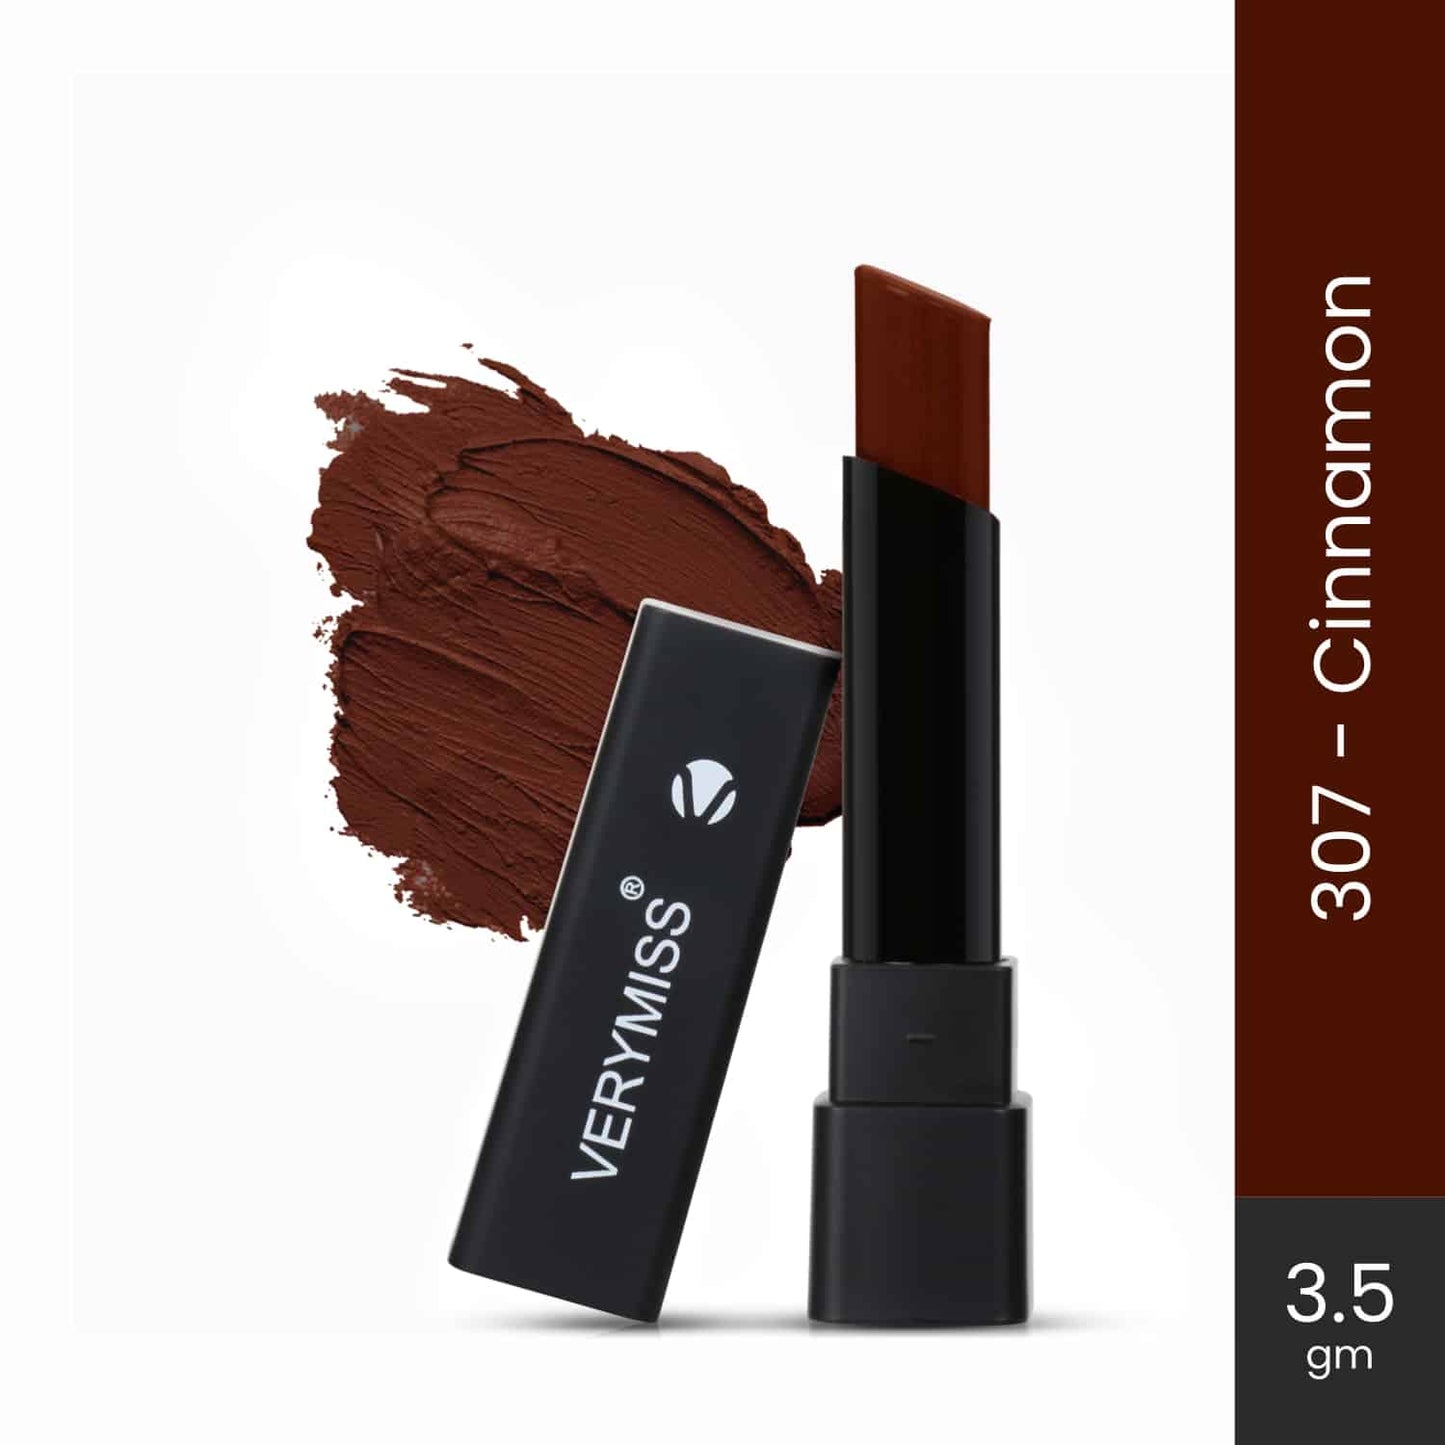 Ultra Rich Matte Lipstick - 307 Cinnamon